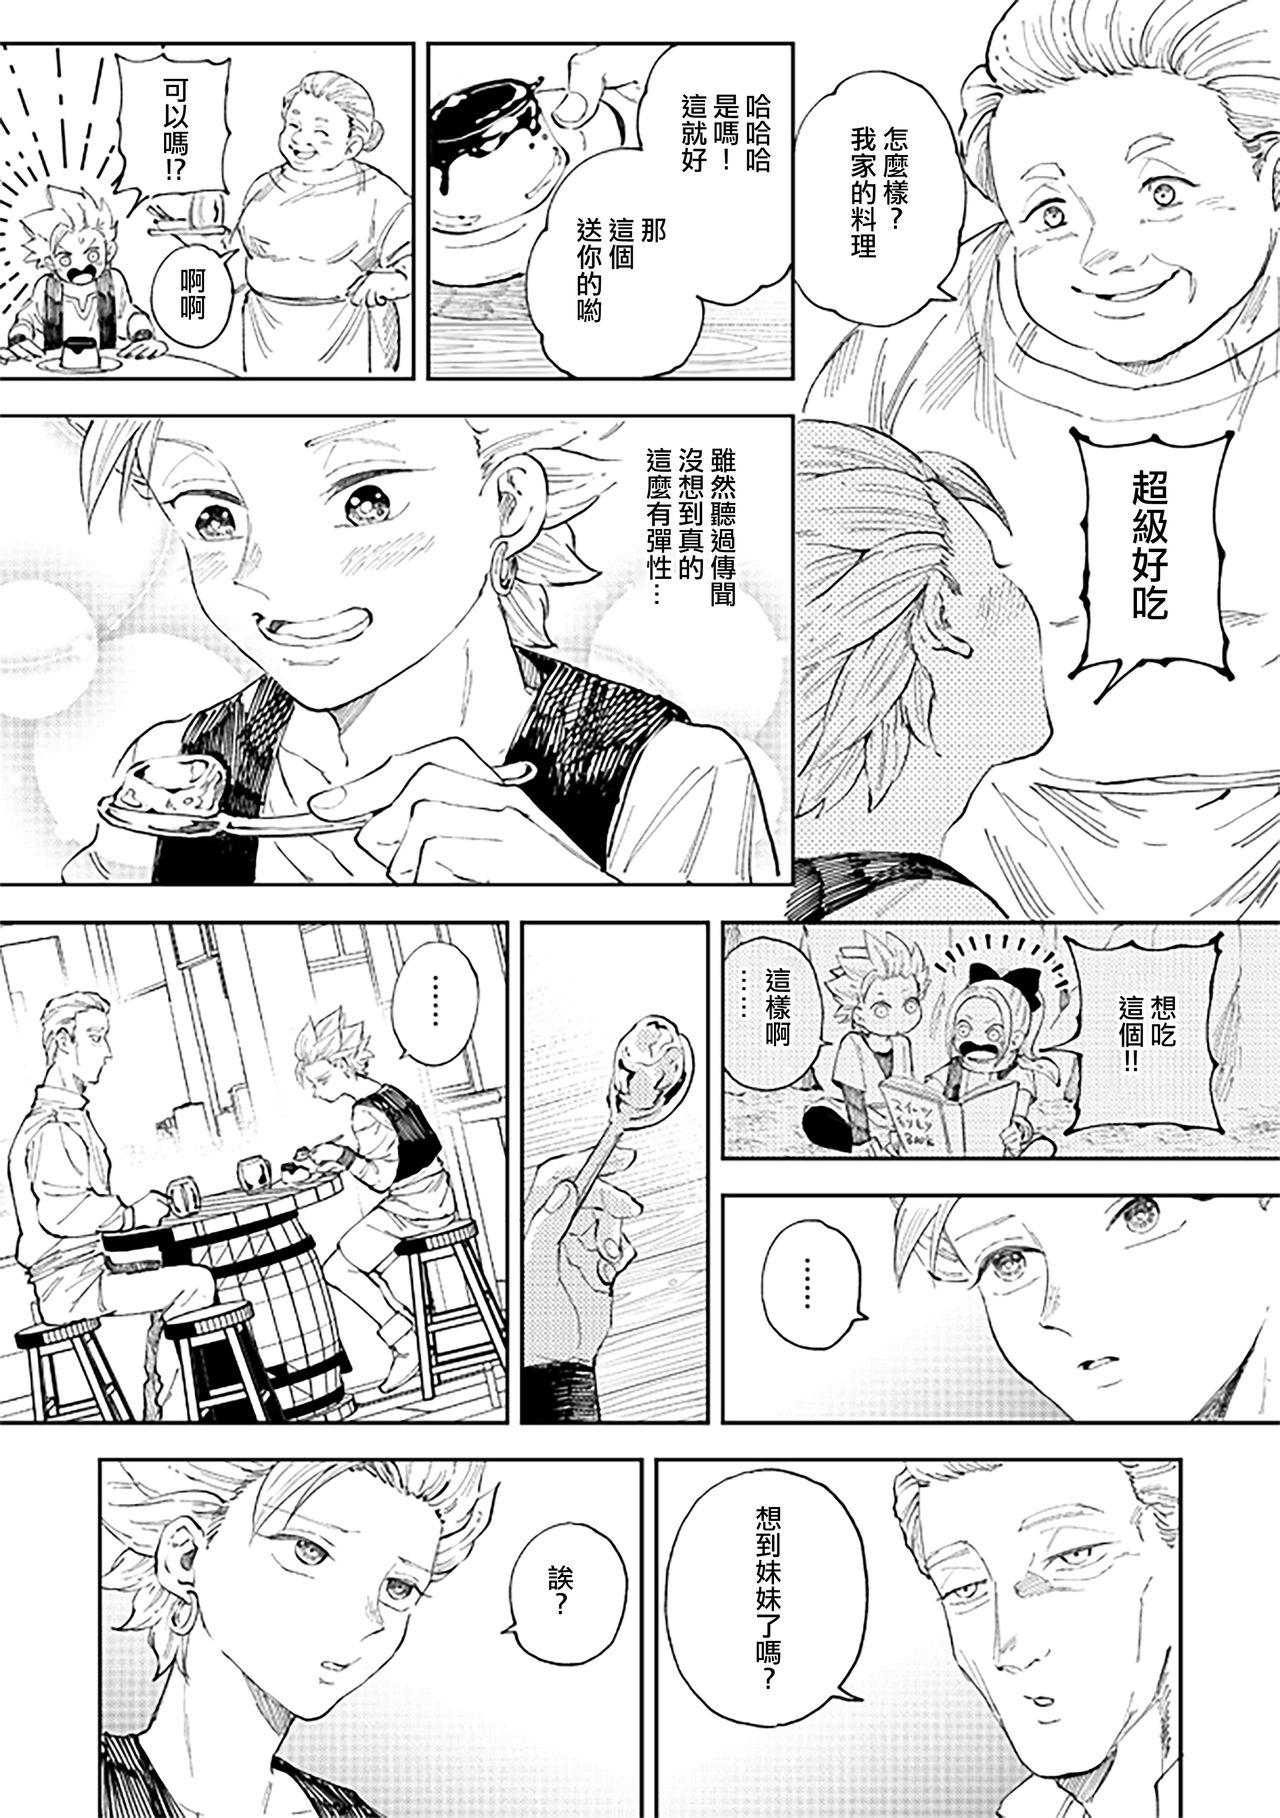 Rubbing Rental Kamyu-kun 6 day - Dragon quest xi Caiu Na Net - Page 8